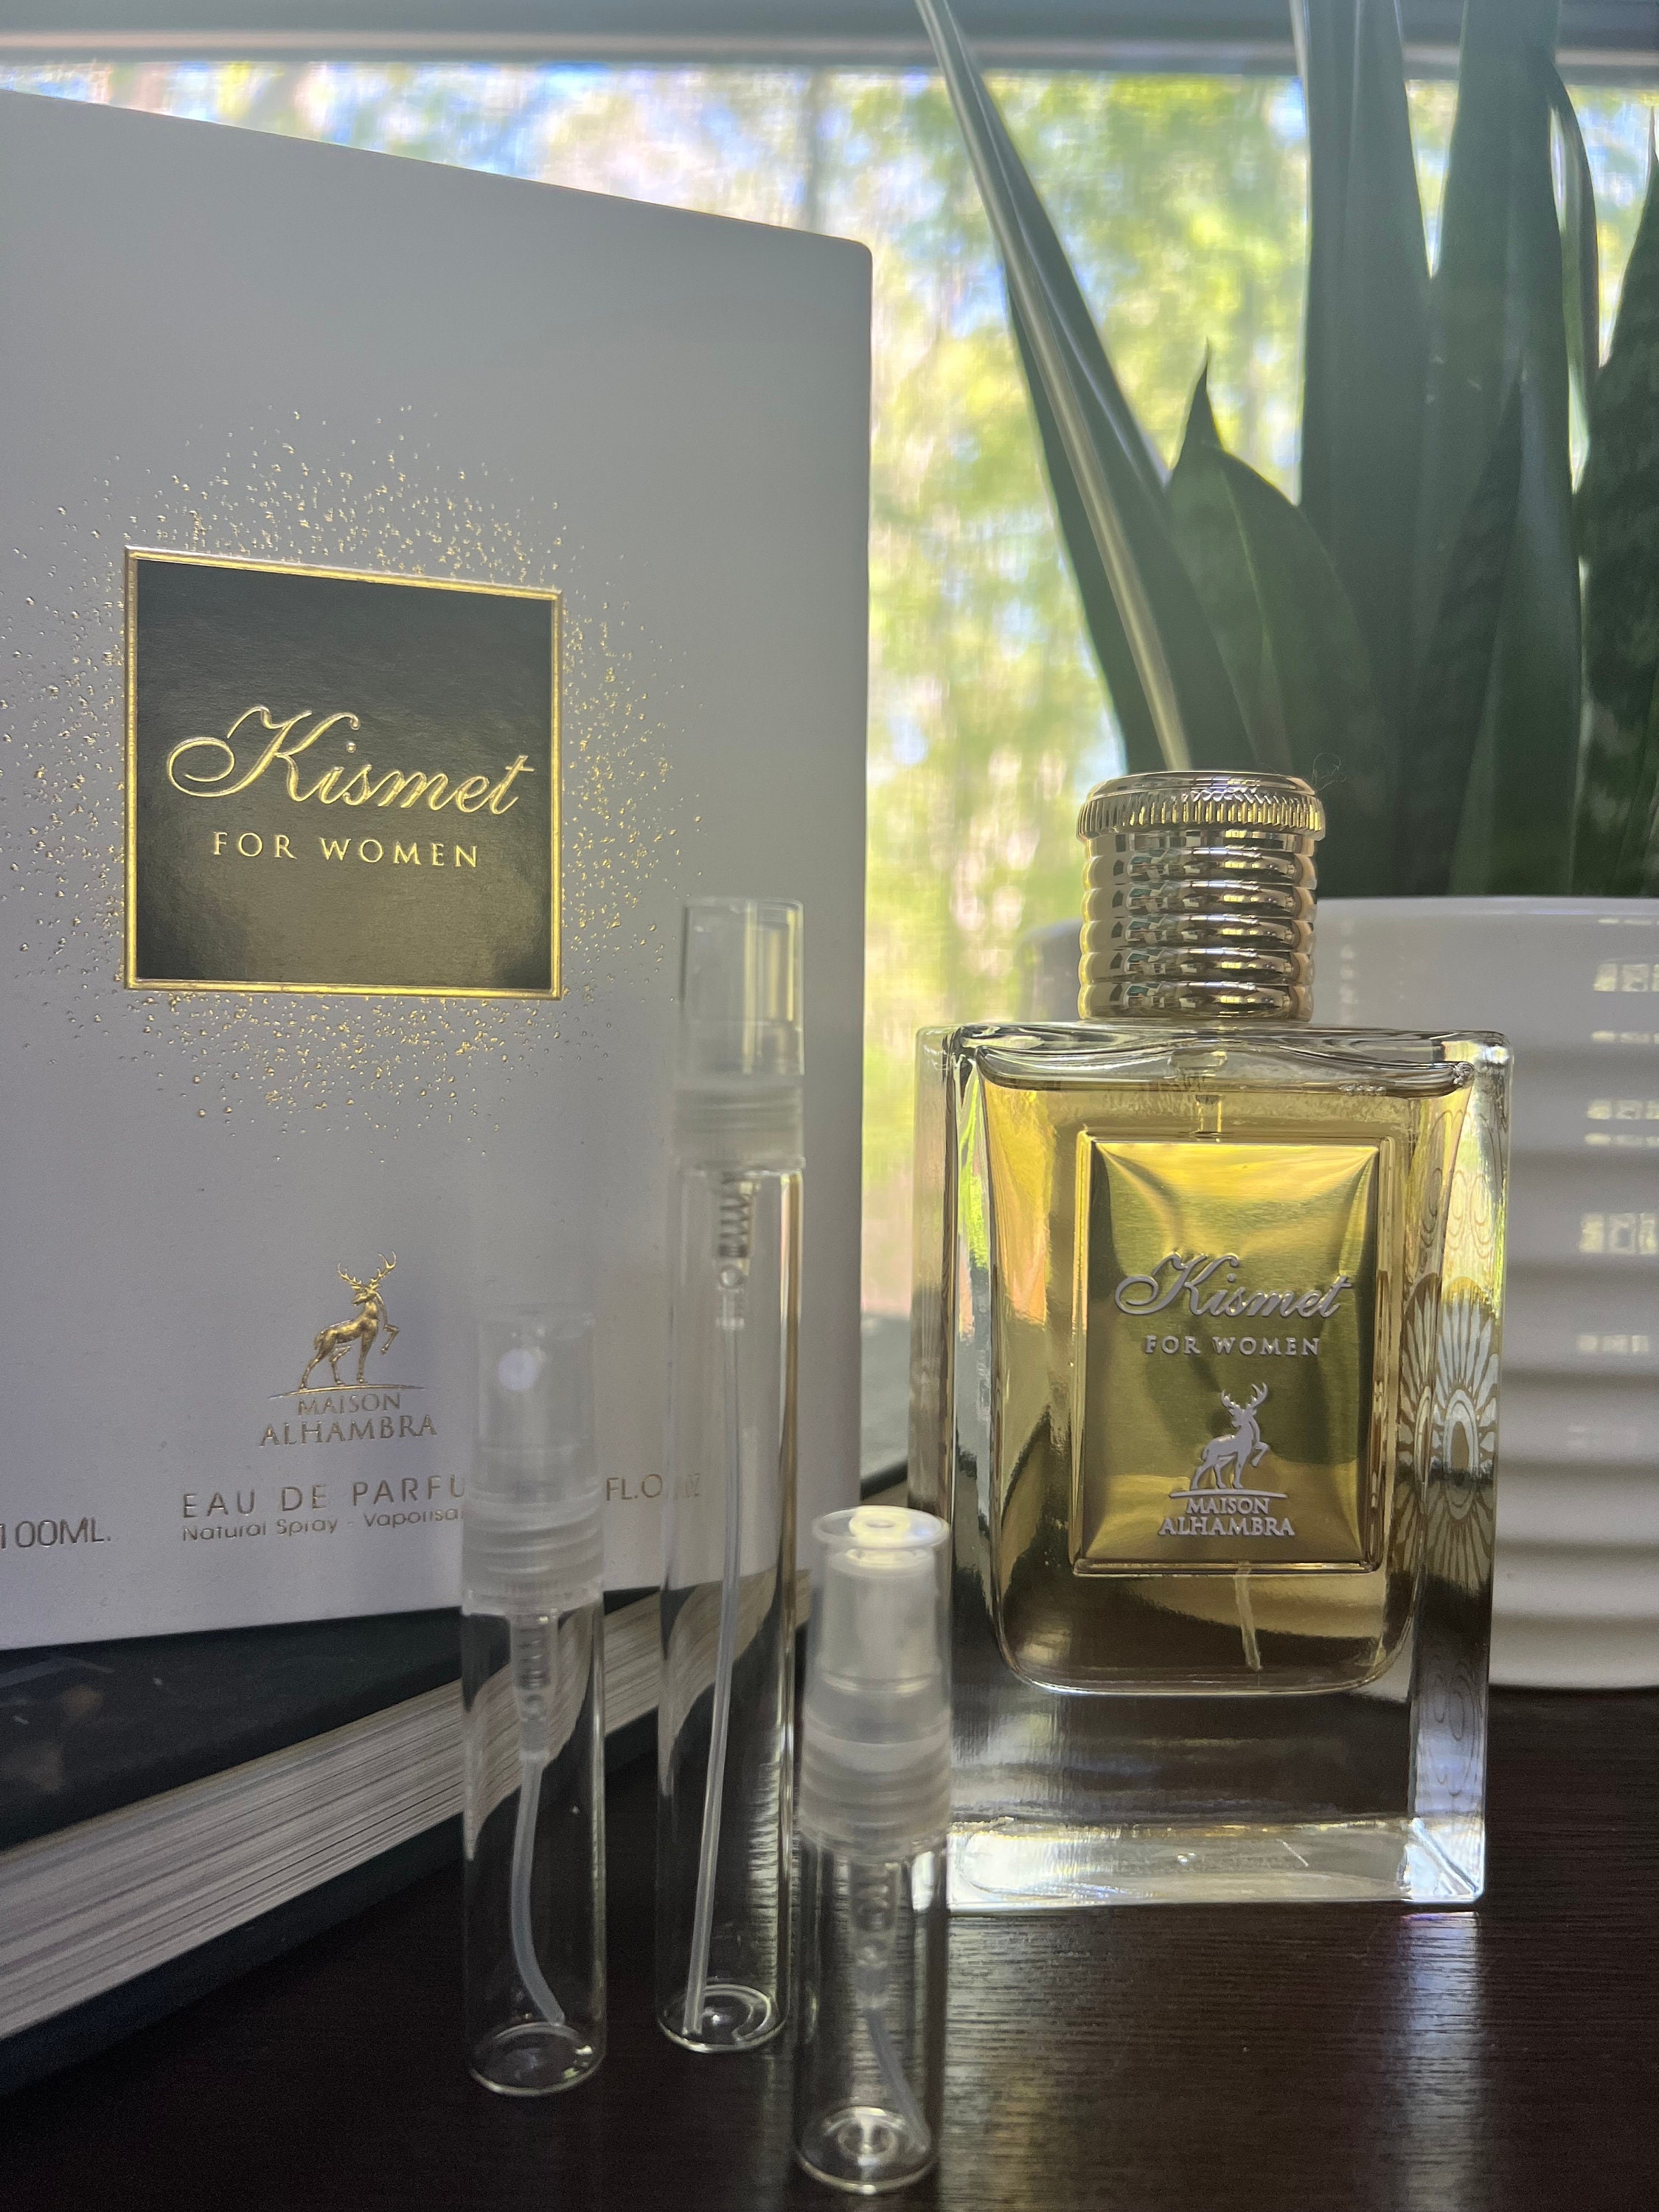 Maison Alhambra Kismet For Men Eau De Parfum 100ml